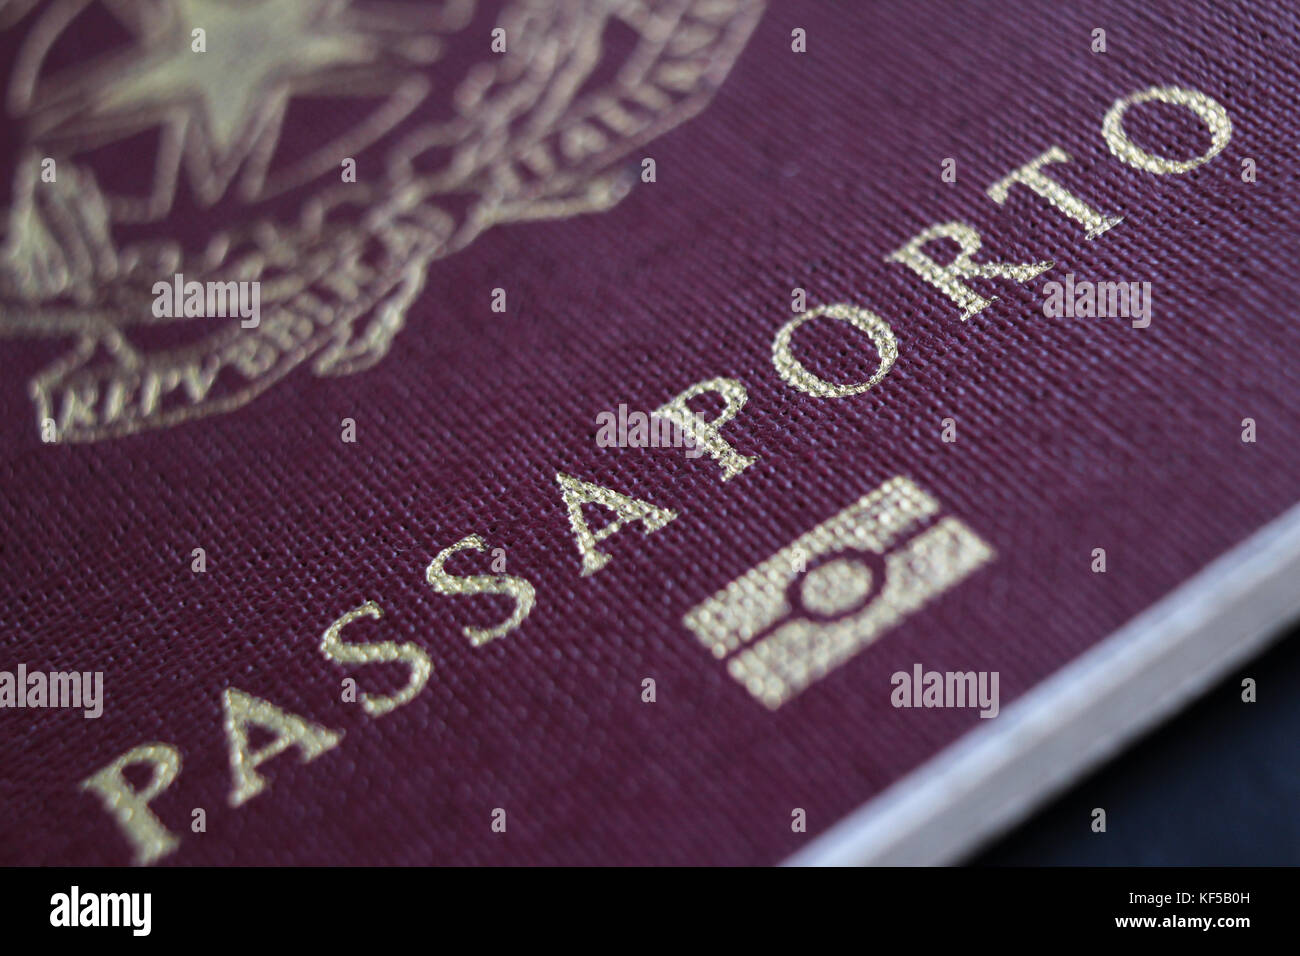 Italian European Union passport, closeup Stock Photo